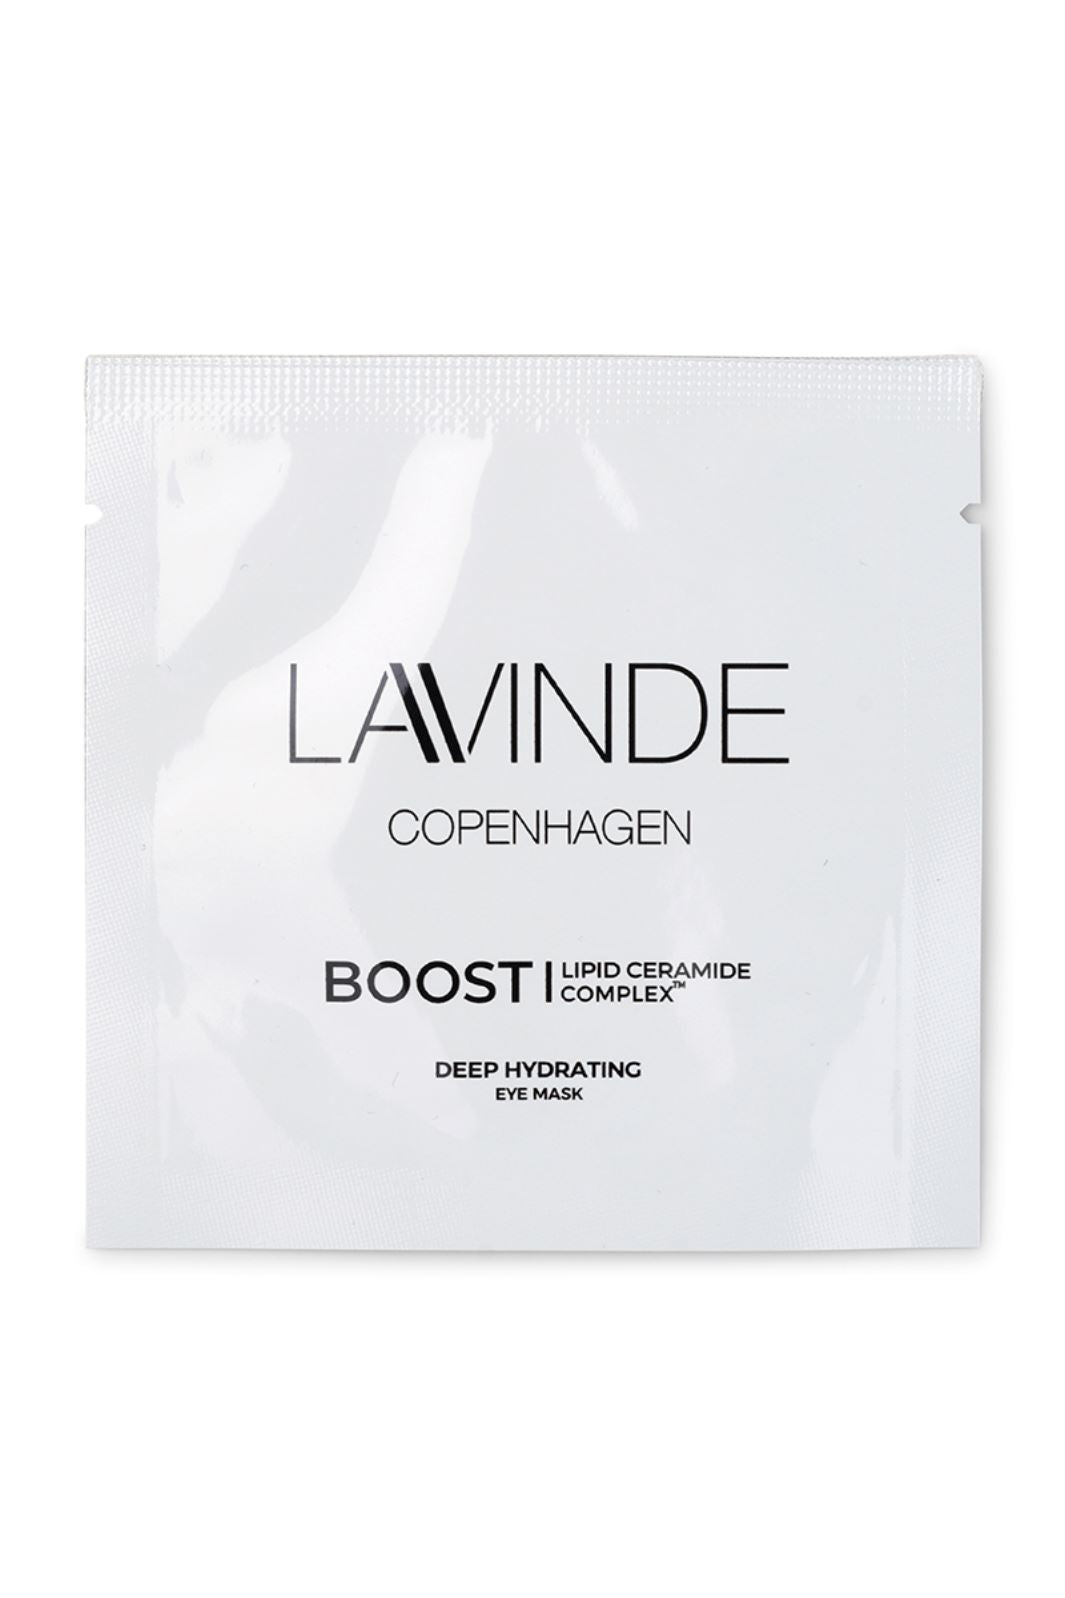 Lavinde Copenhagen - Boost - Deep Hydrating Eye Mask (2 Treatments) - 2 stk Øjenpleje 